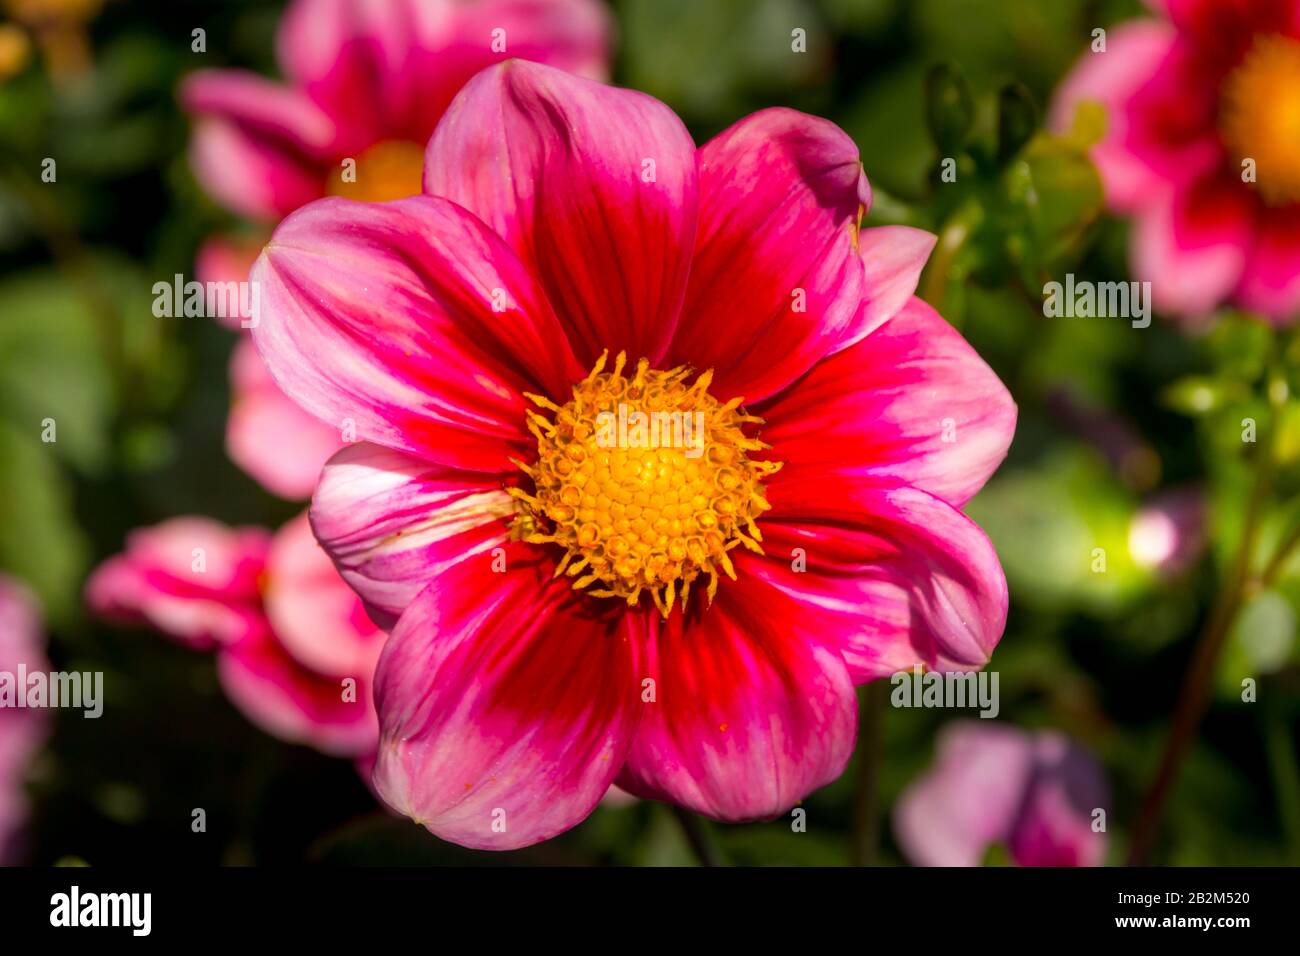 Isola Di Mainau, Lago Di Costanza, Germania - 11 Set. 2015: Giardini botanici dell'isola di Mainau, l'insenatura sul lago di Costanza, fiori viola Foto Stock